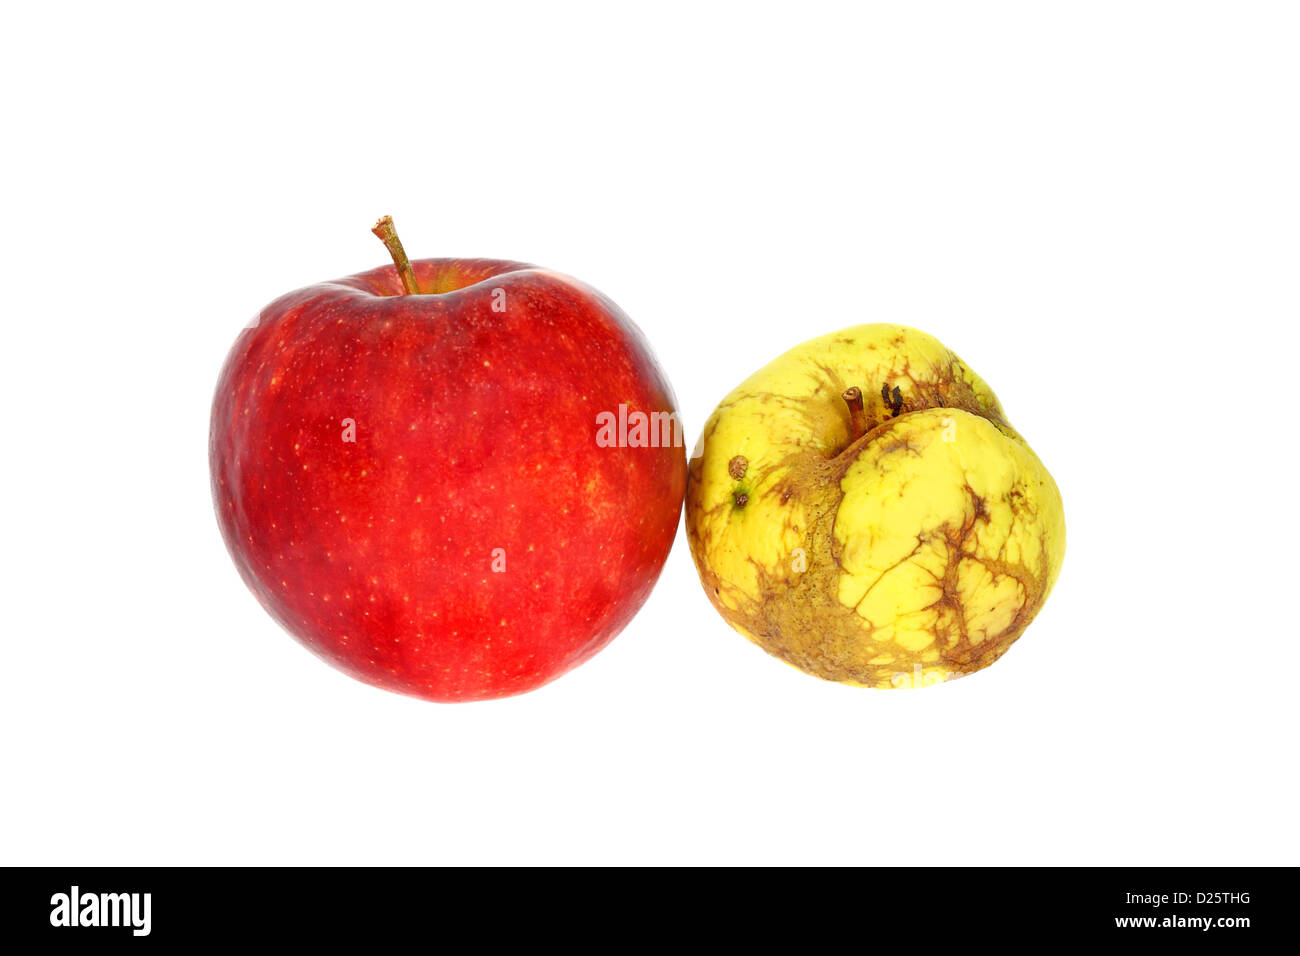 Ugly yellow apple près de la bonne pomme rouge isolé sur fond blanc Banque D'Images